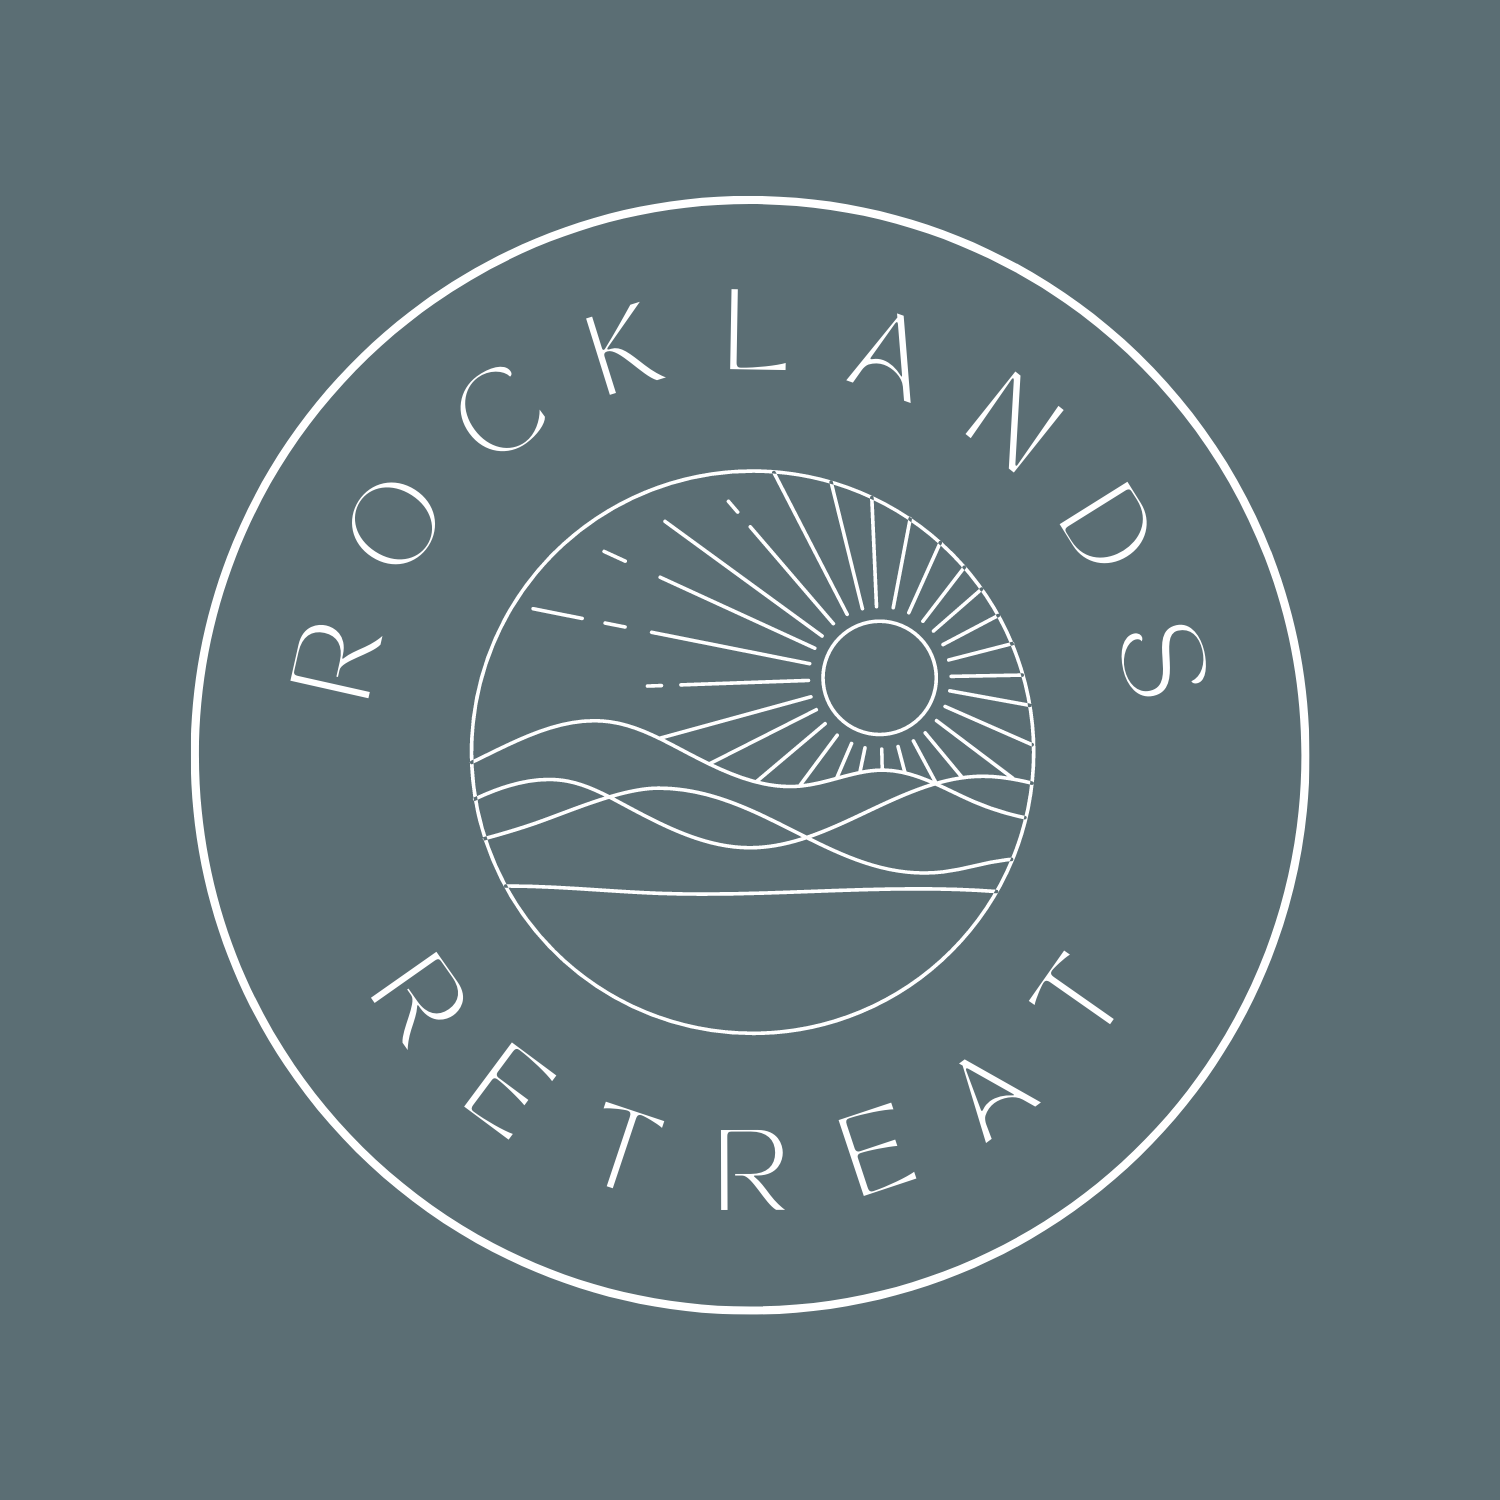 Rocklands Retreat